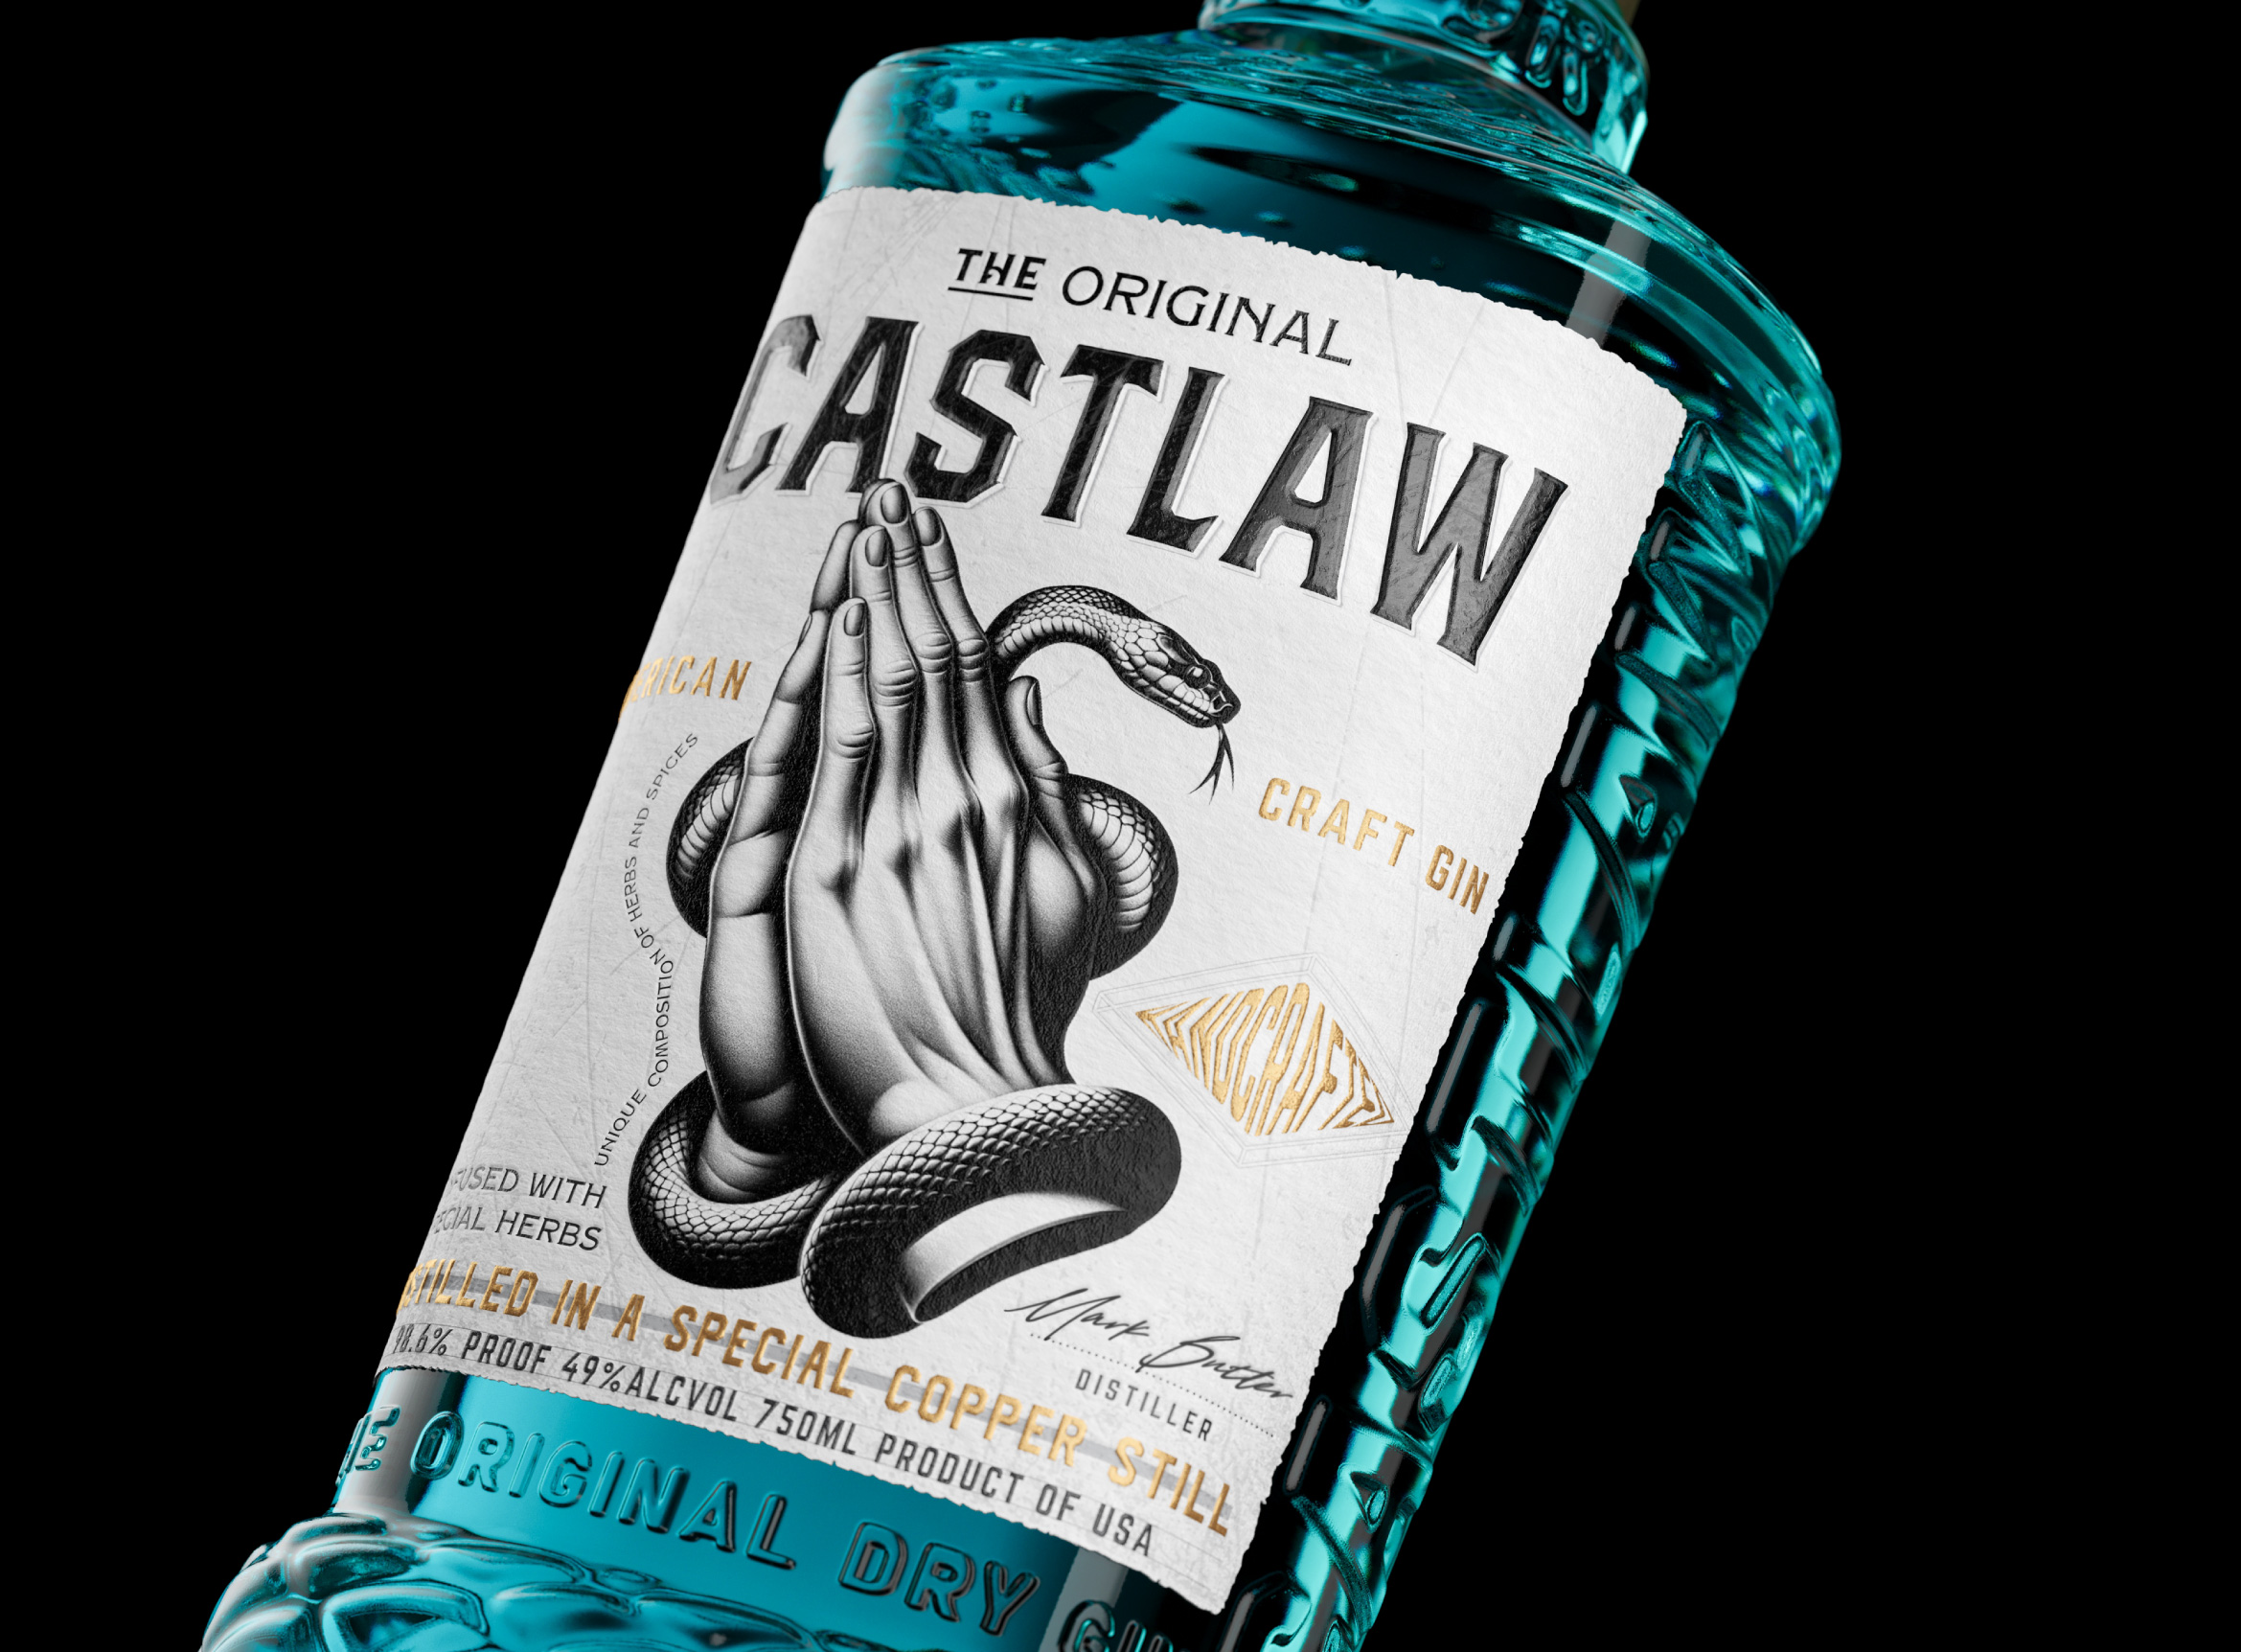 Reynolds and Reyner Celebrates Mystique and Legends with Castlaw Gin Design